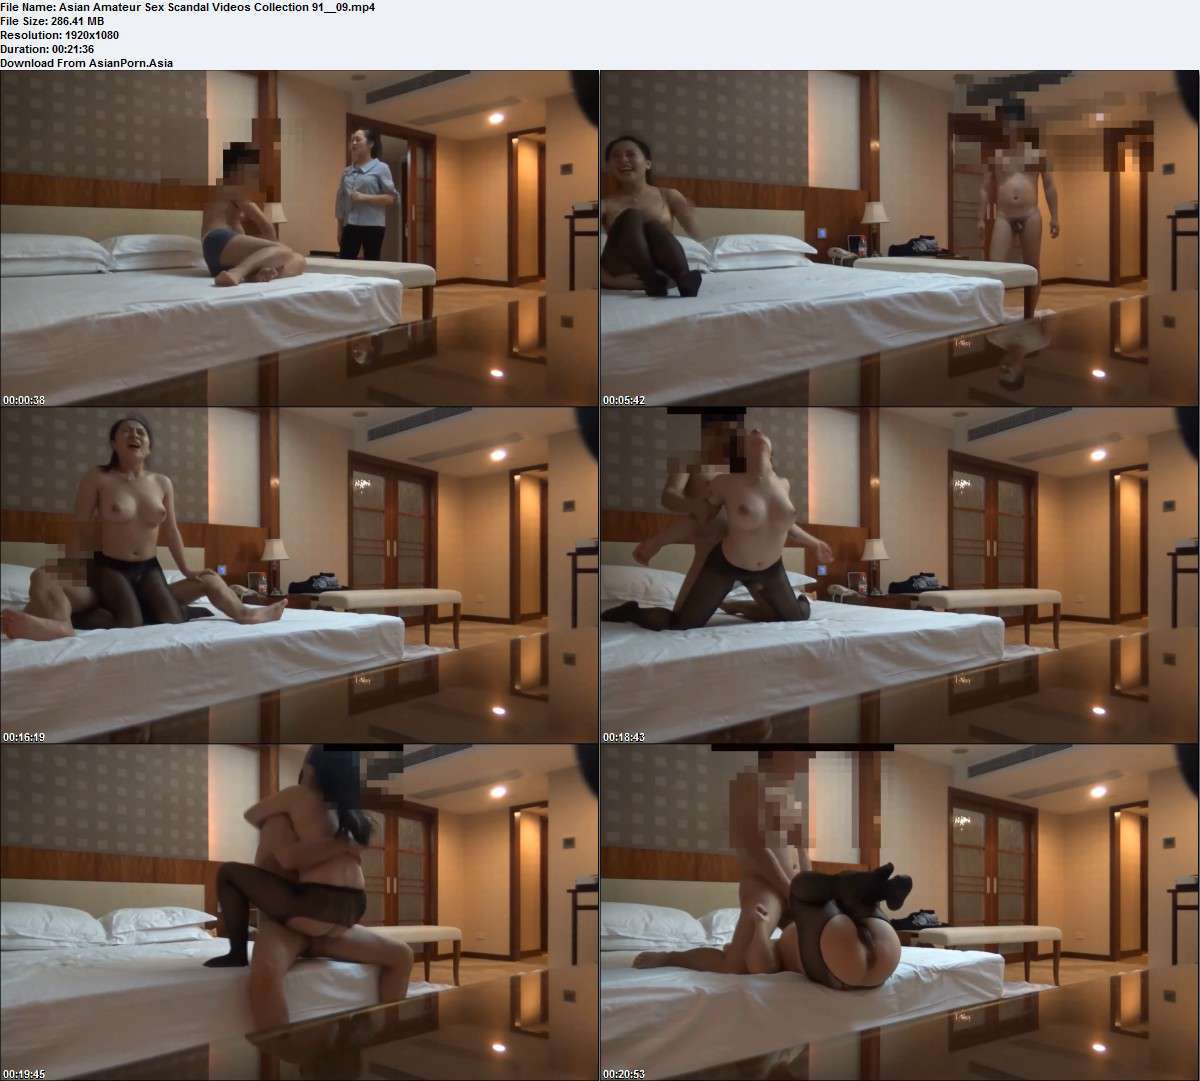 Asian Amateur Sex Scandal Videos Collection 91